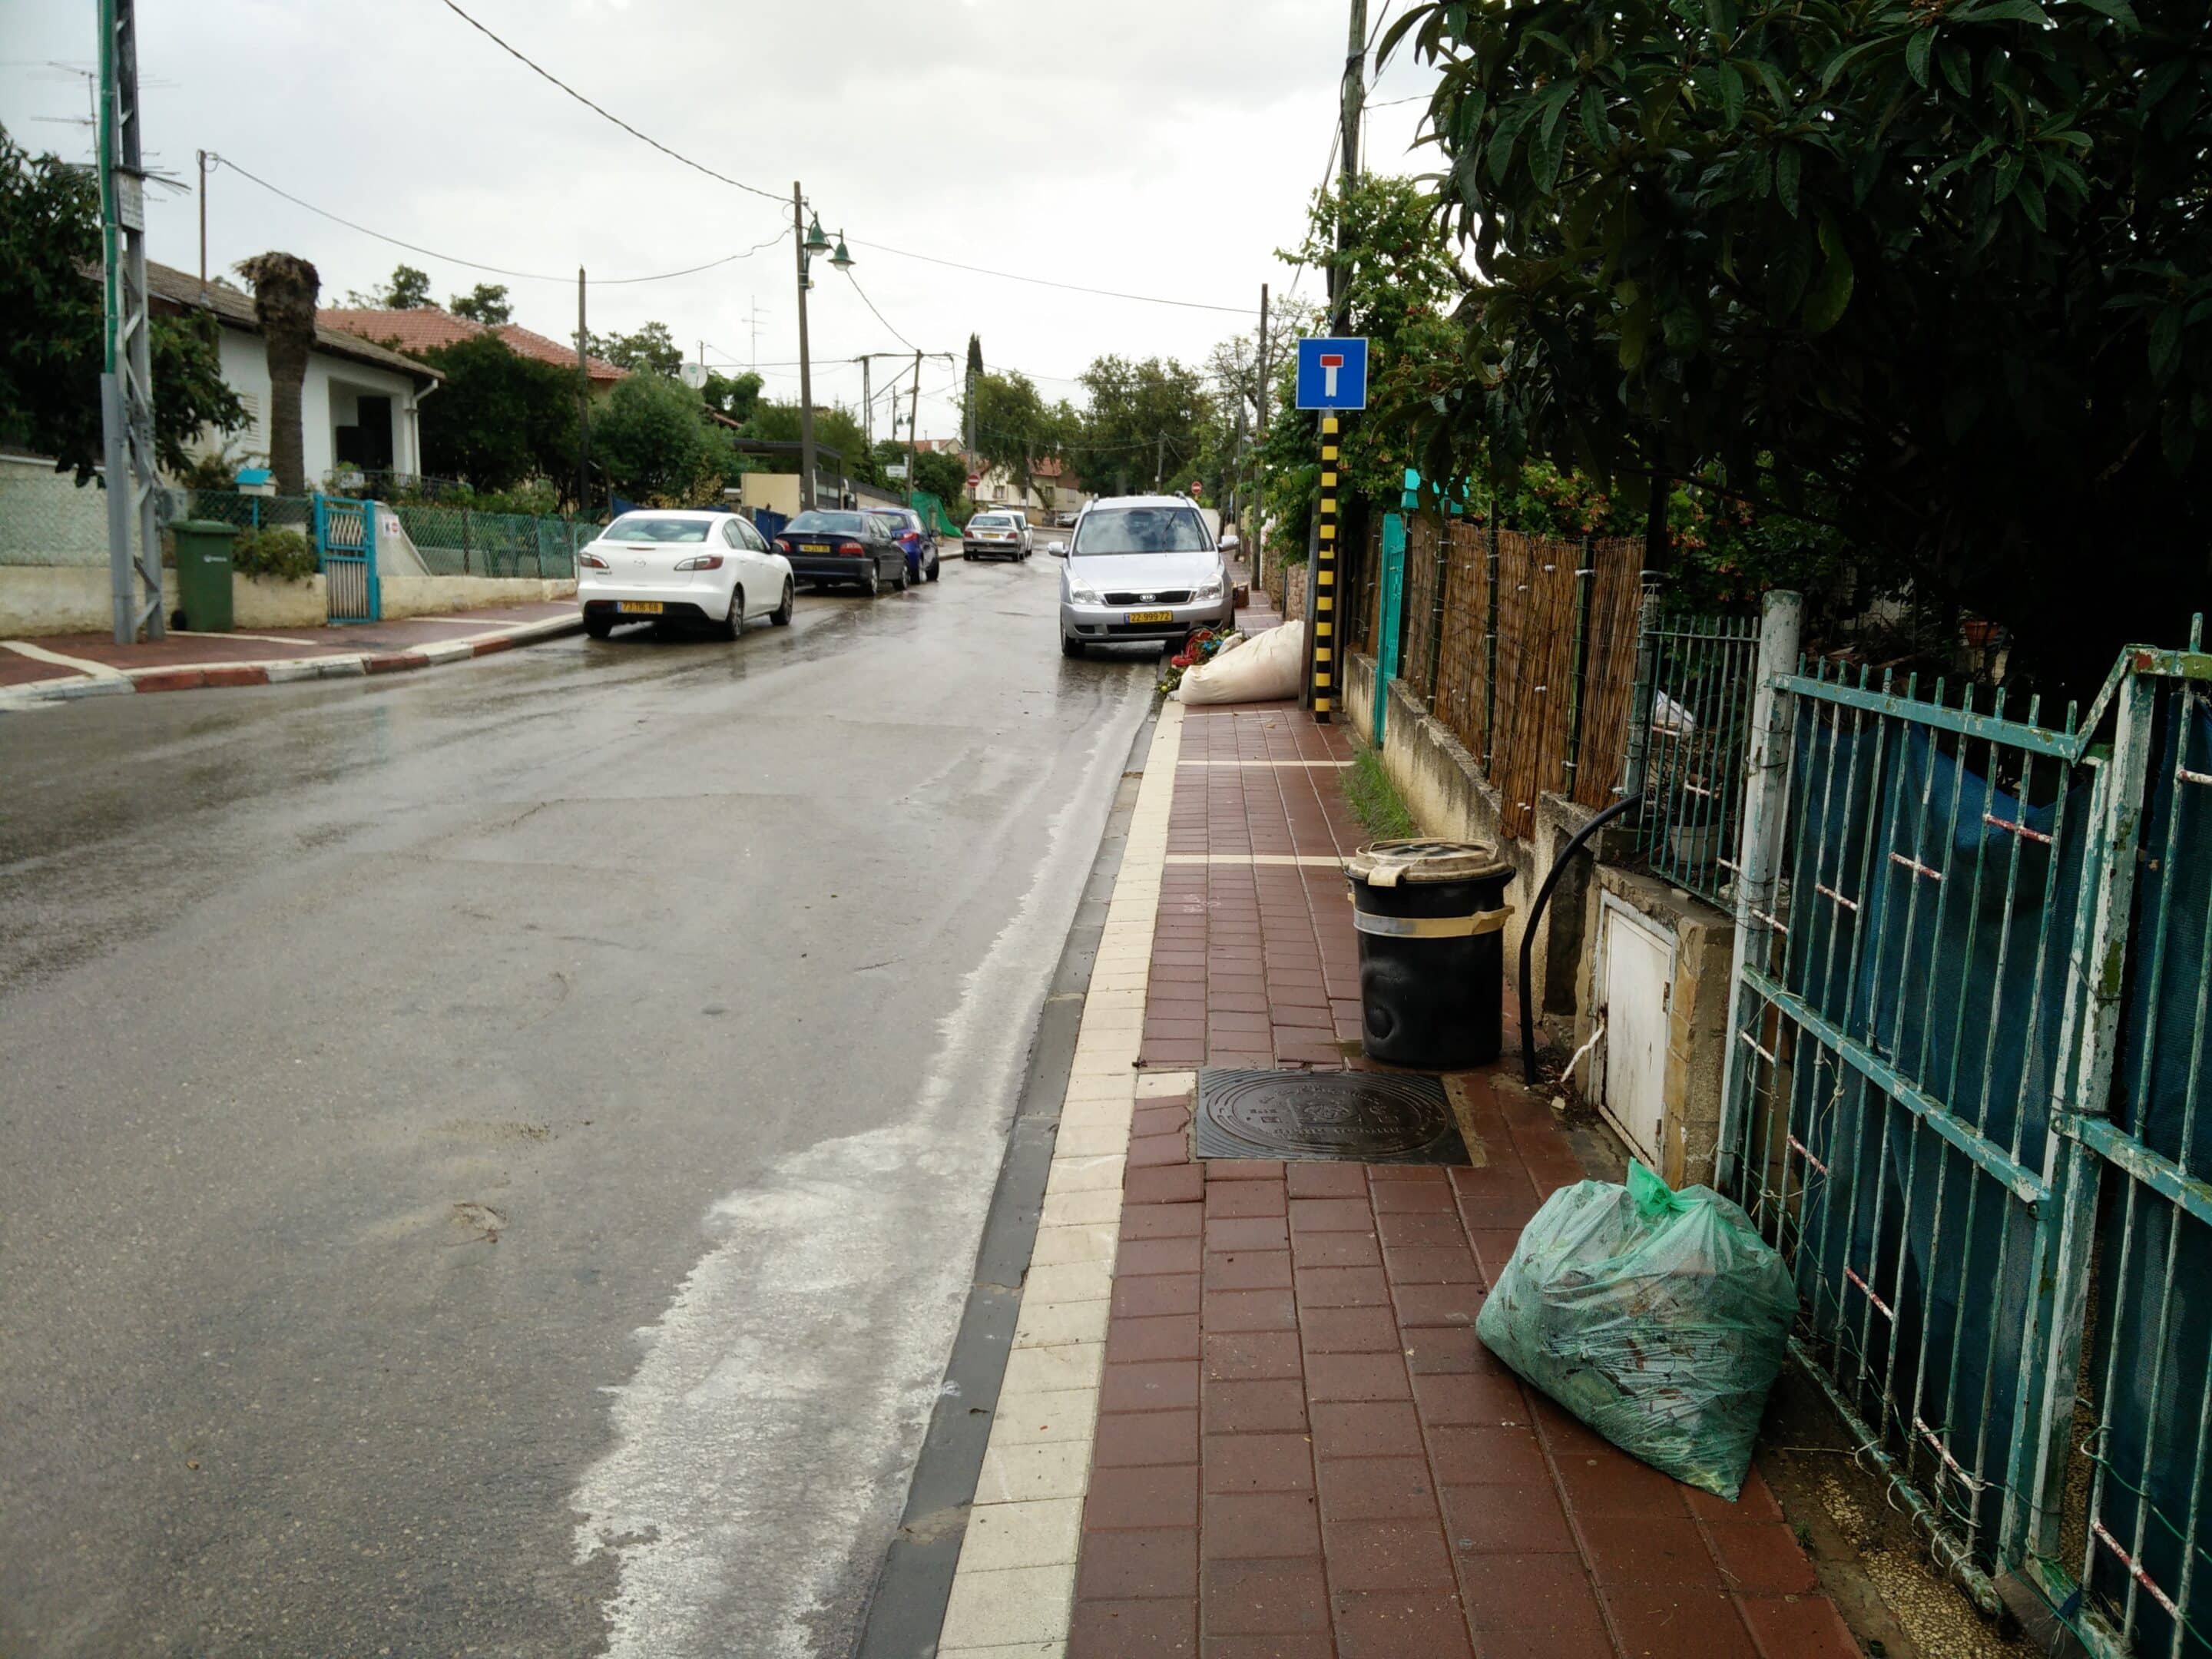 A typical sidewalk in Israel